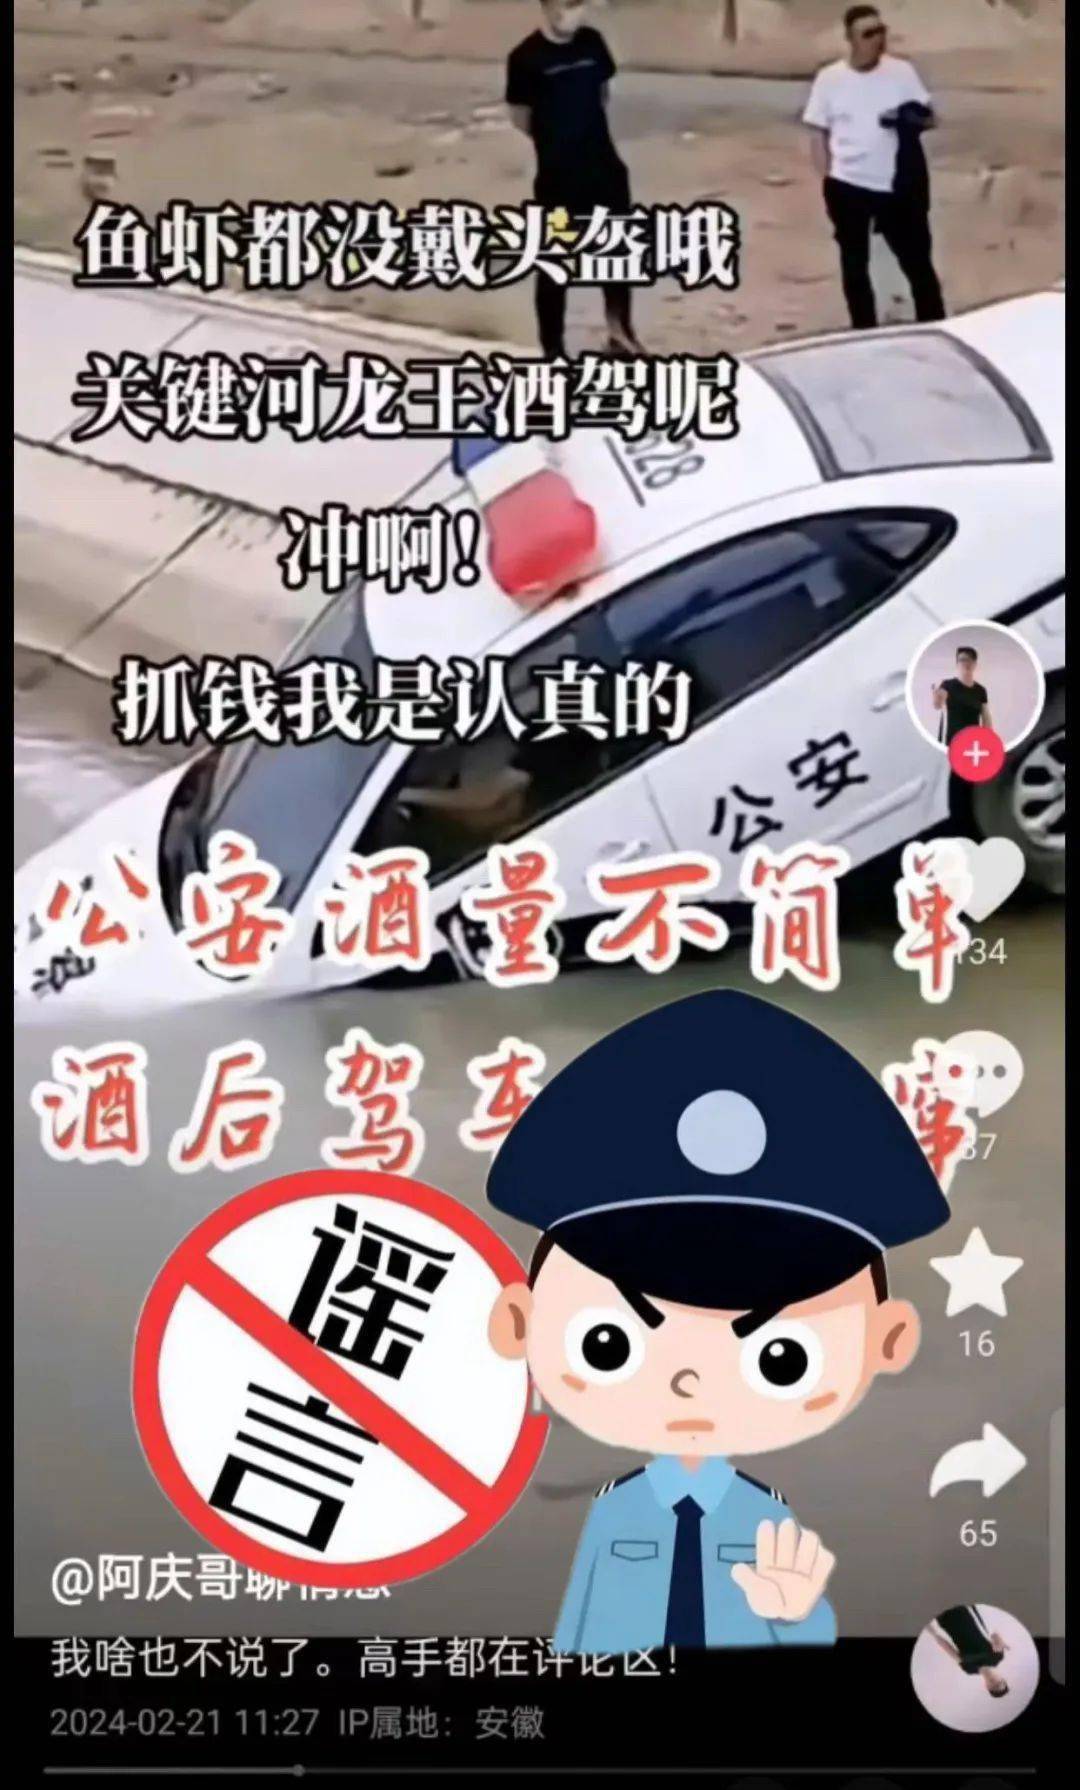 网民邹某在抖音平台发布警车坠河视频并称公安酒量不简单,酒后驾车